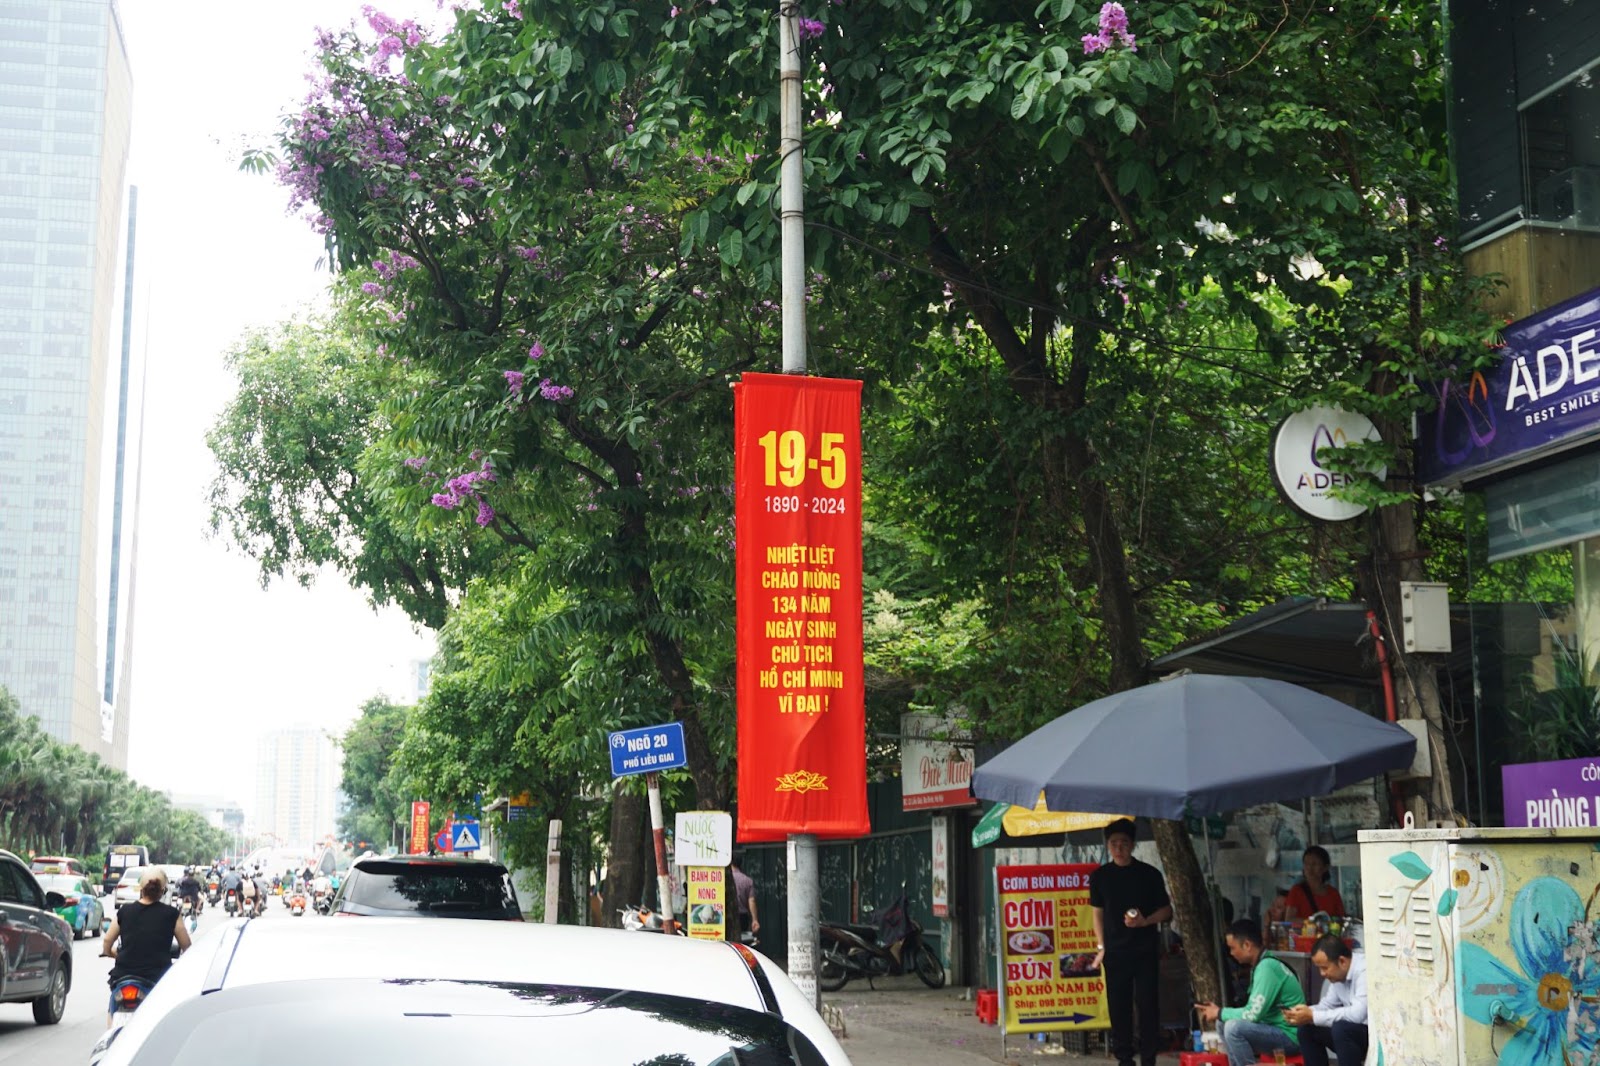 Hà Nội rợp sắc cờ hoa kỷ niệm ngày sinh Chủ tịch Hồ Chí Minh - Ảnh 10.